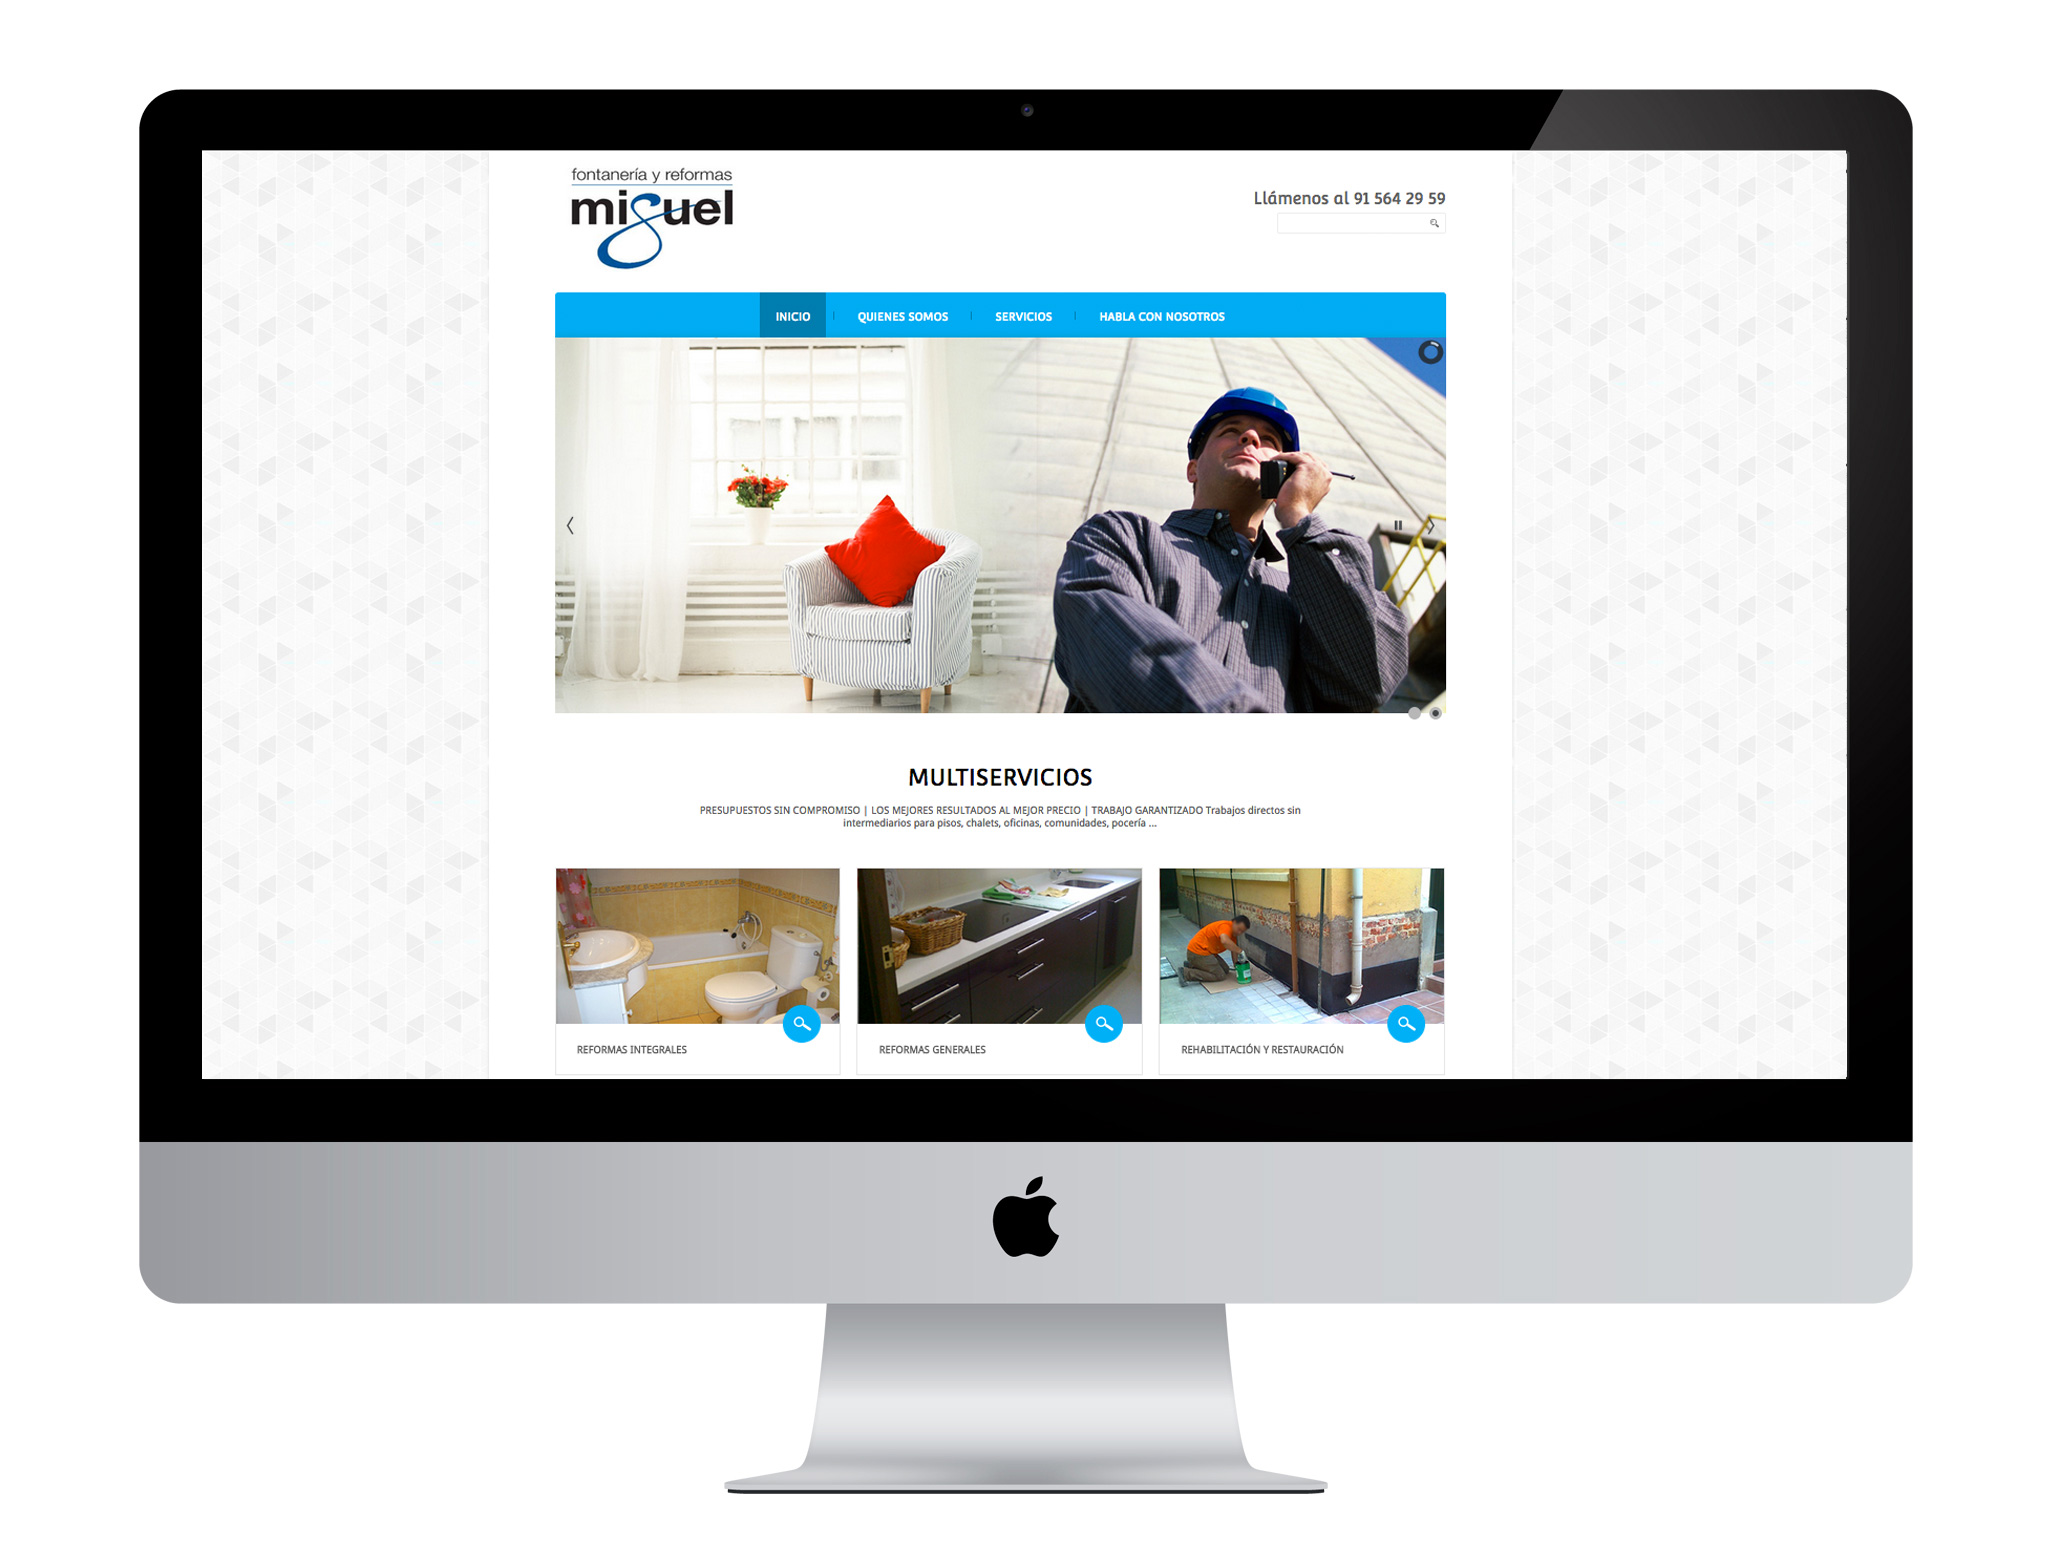 Diseño gráfico y web con Joomla realizado por agencia de marketing online Softdream